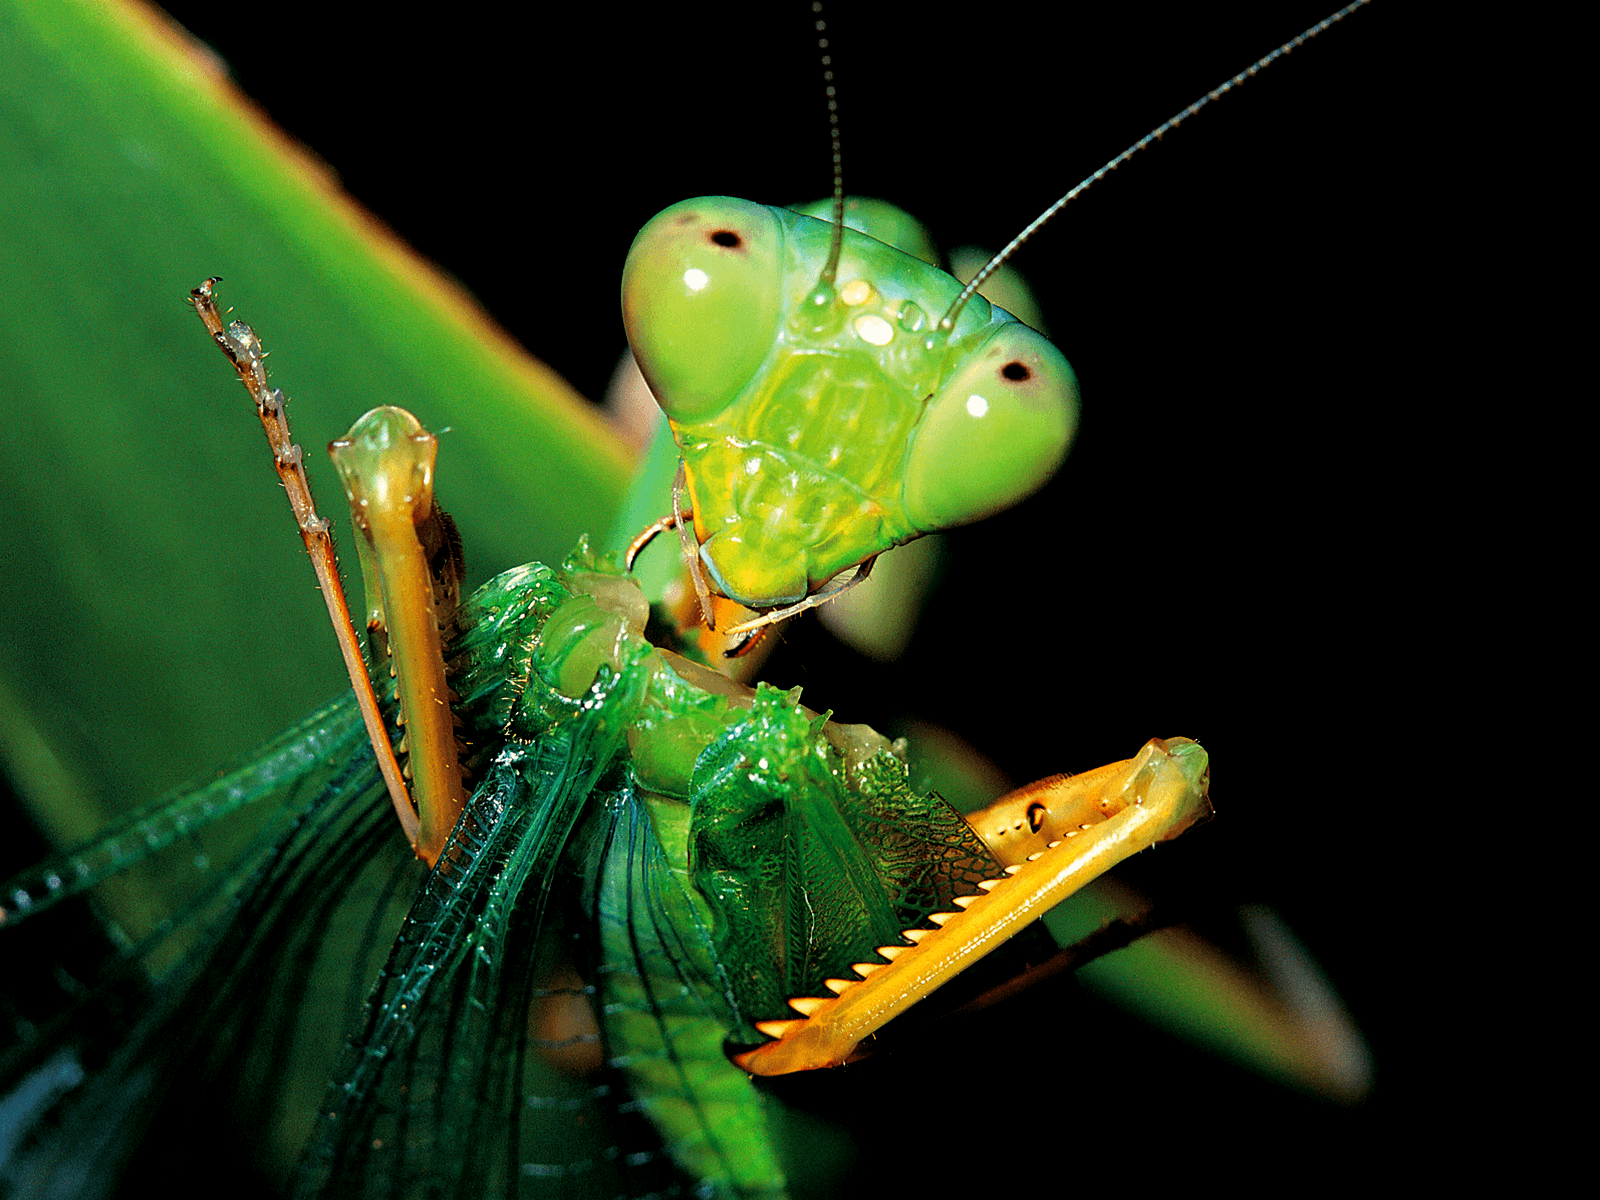 Baby Praying Mantis Eating HD Wallpaper, Background Image